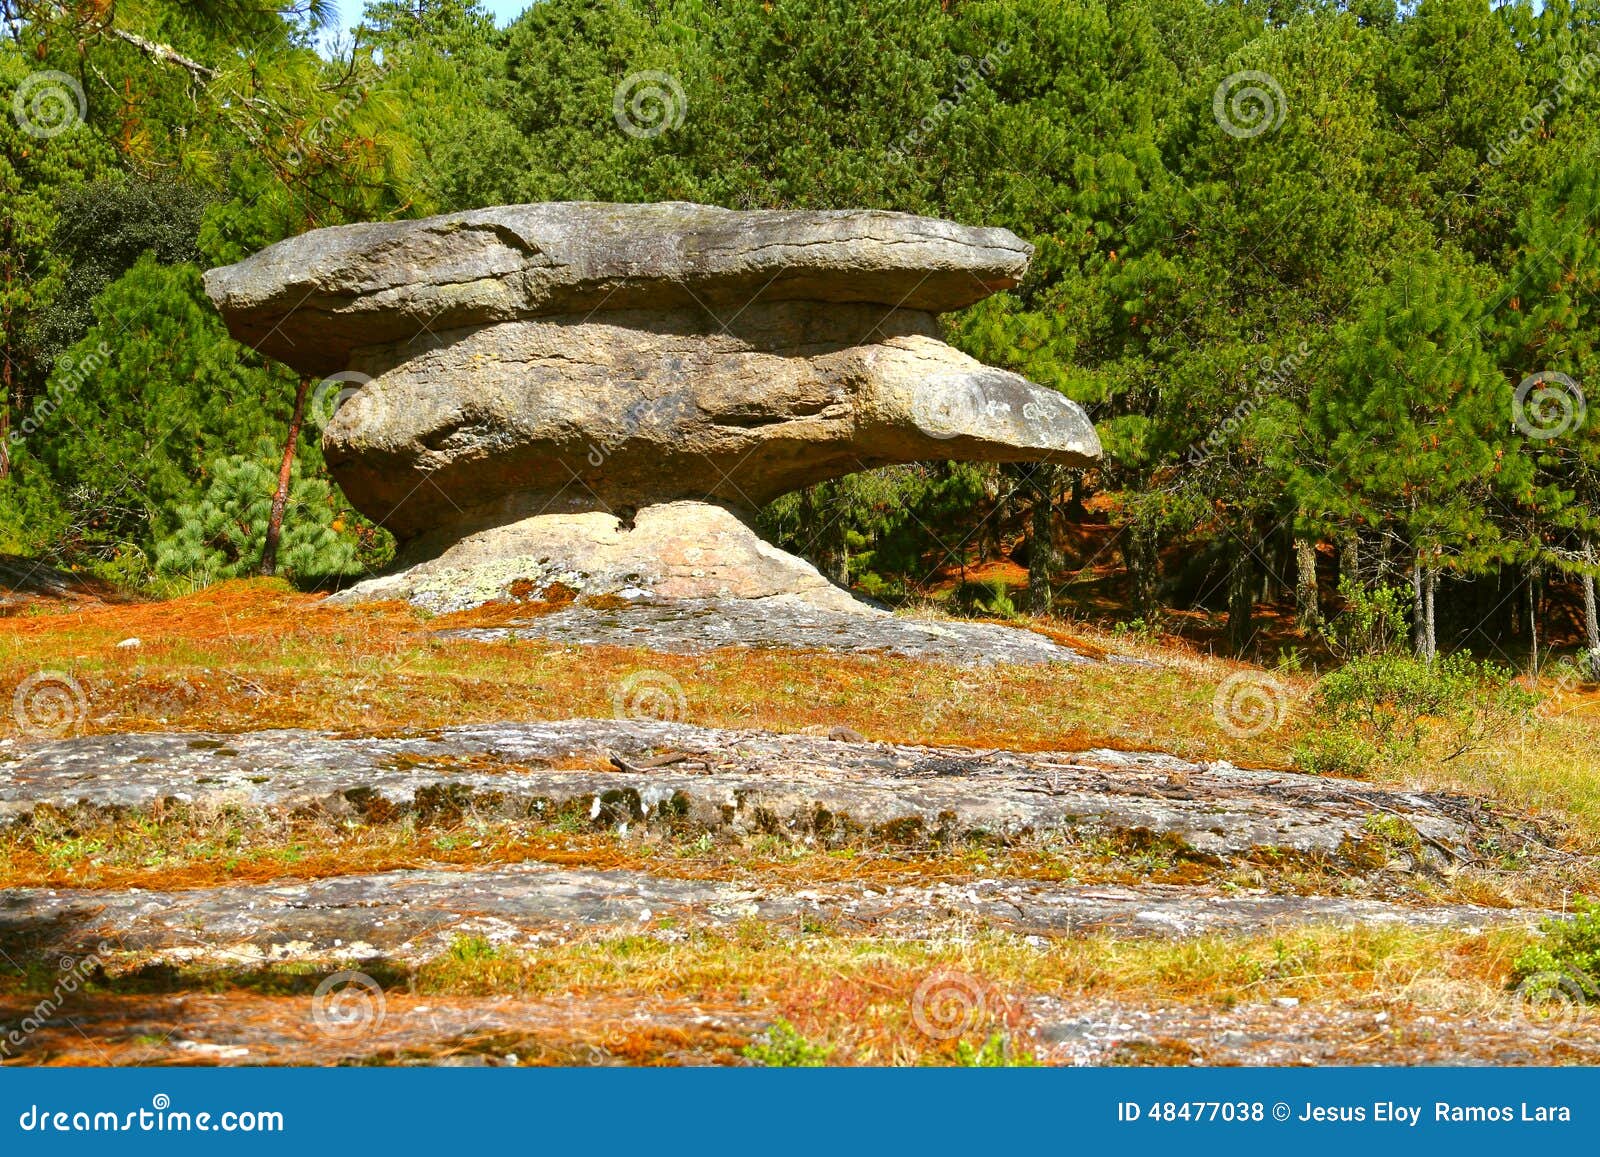 piedras encimadas valley in zacatlan, puebla iii